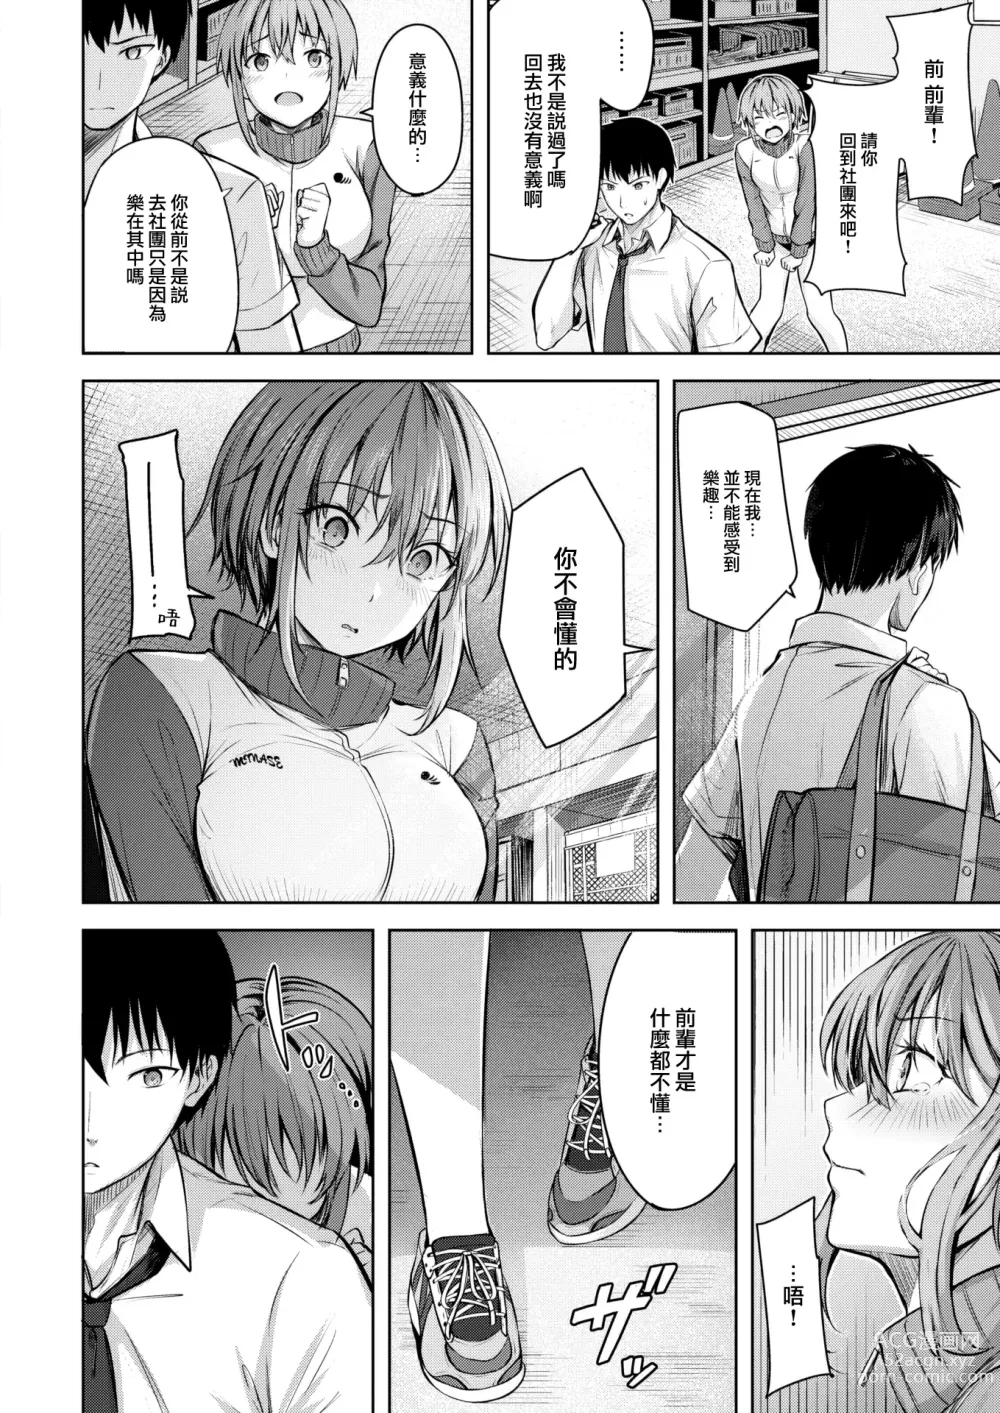 Page 7 of manga Start line